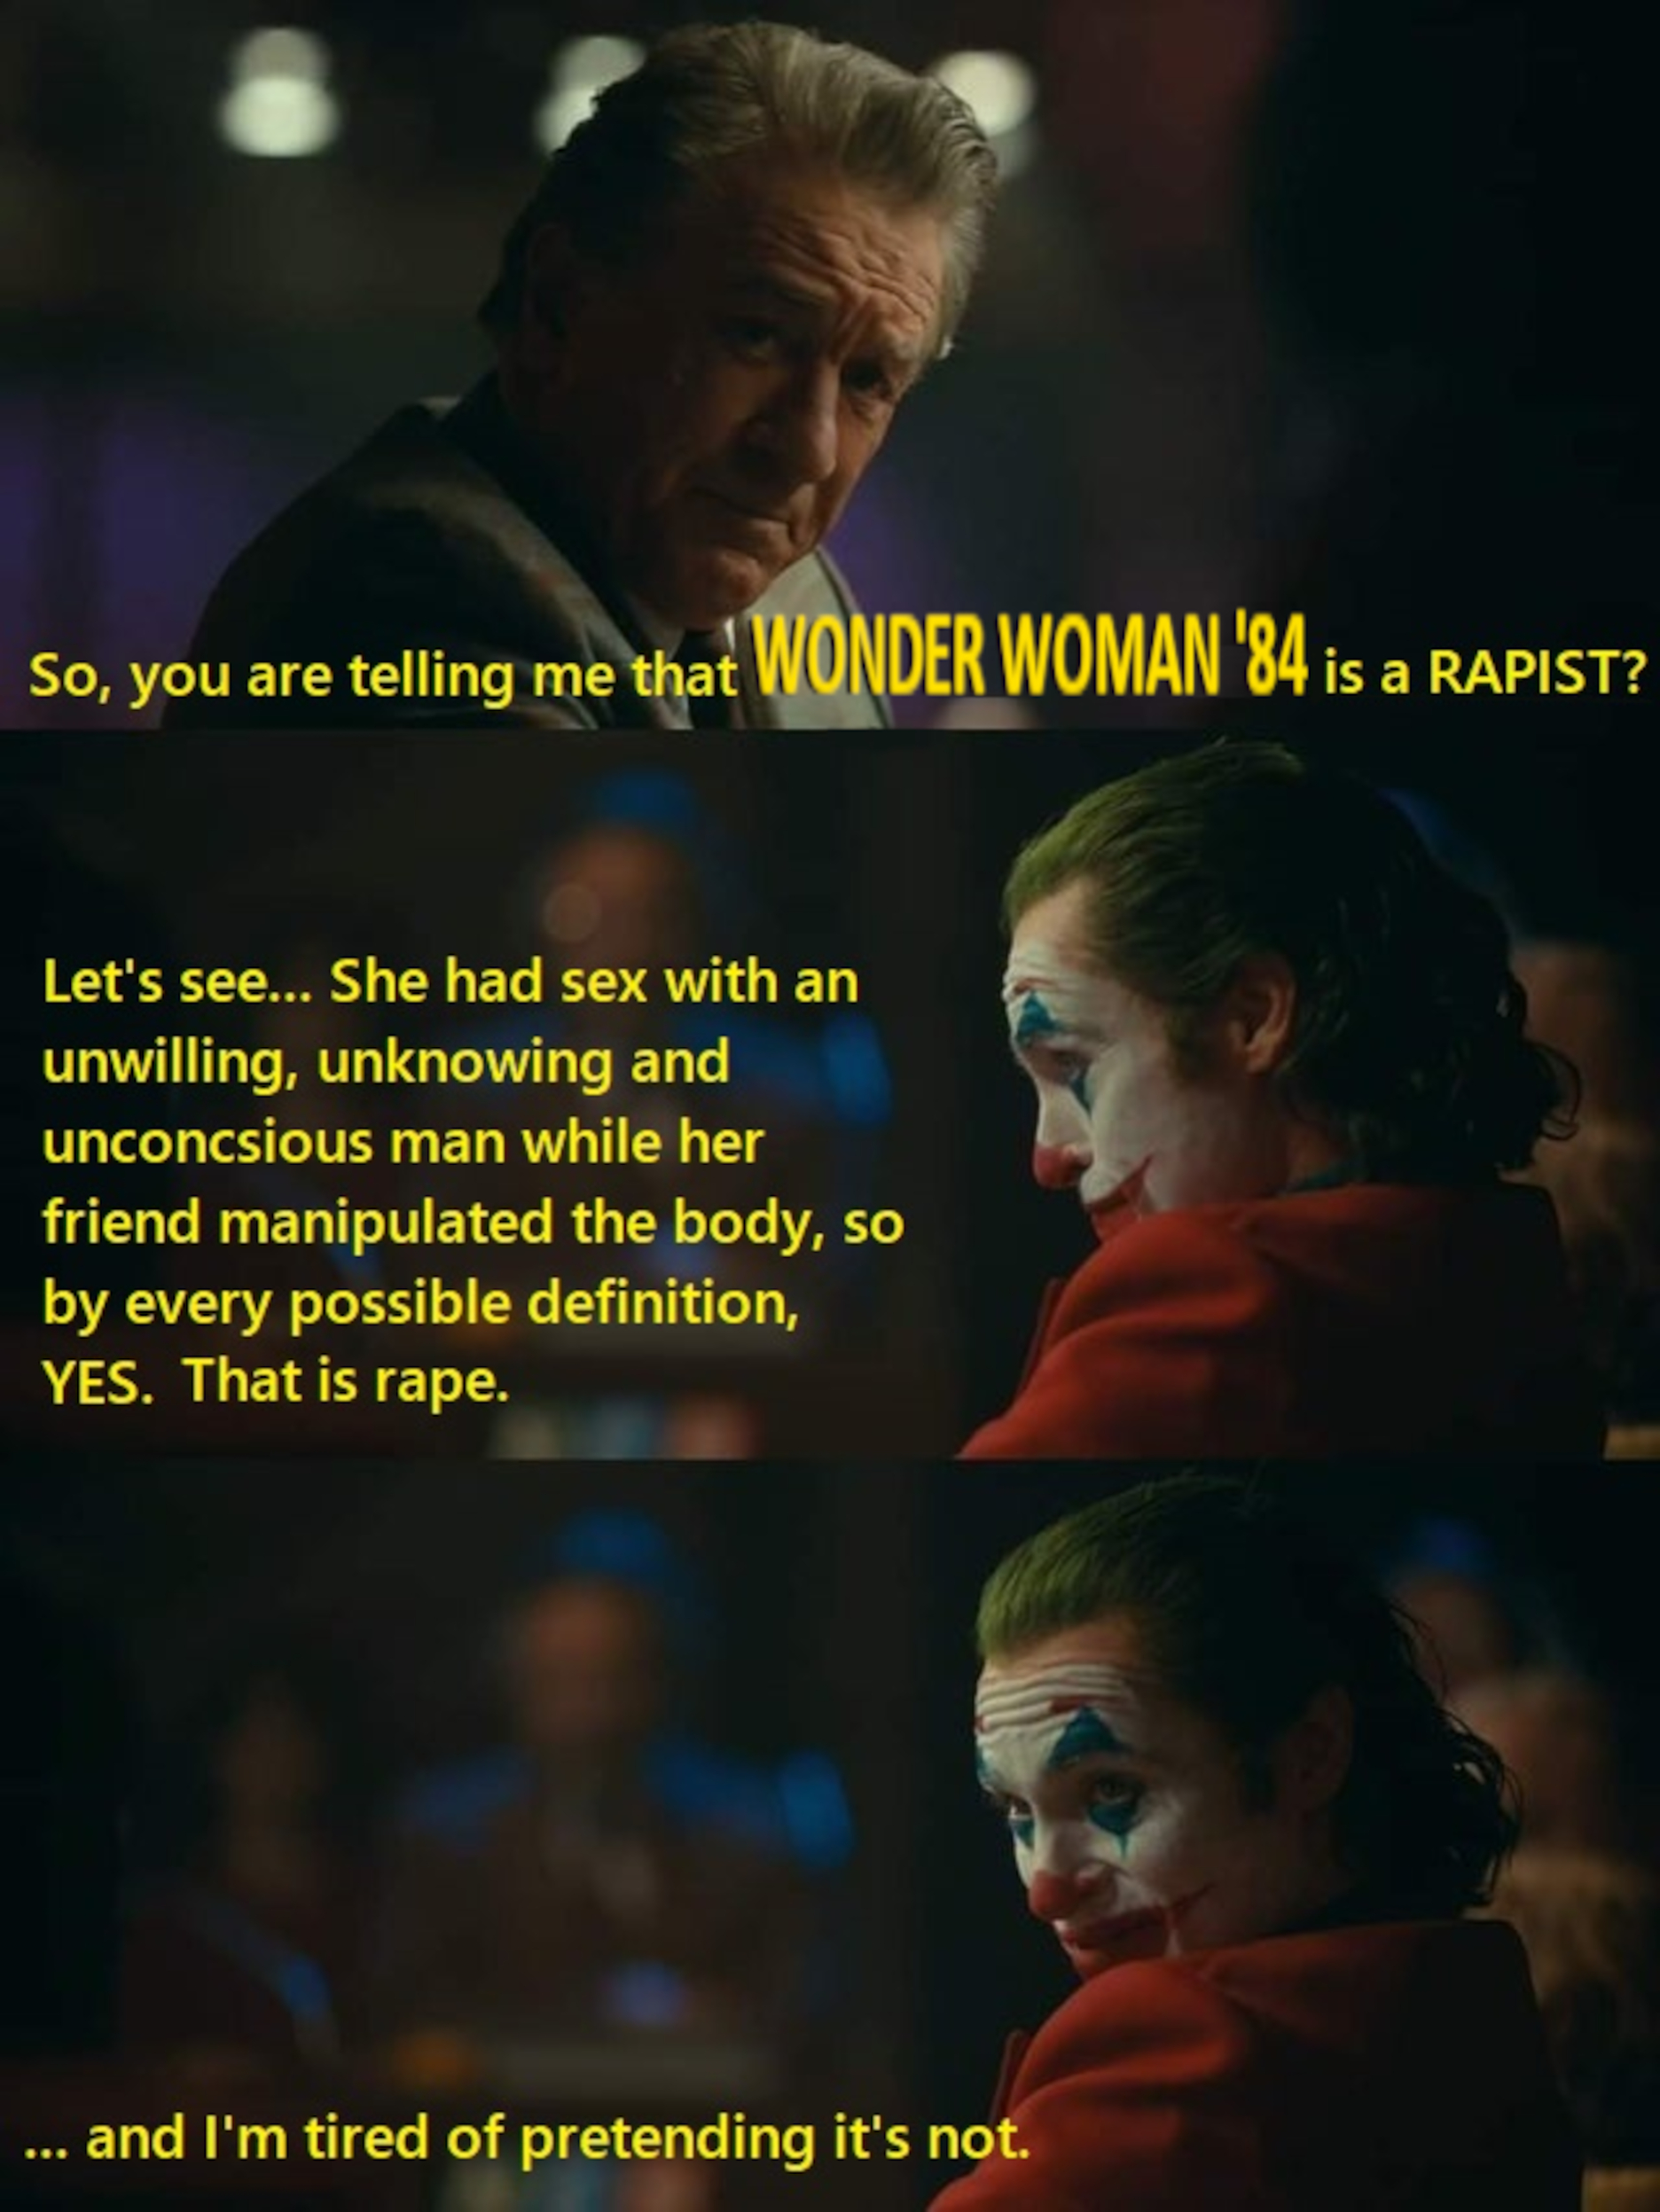 Yeah, Wonder Lady is a rapist.